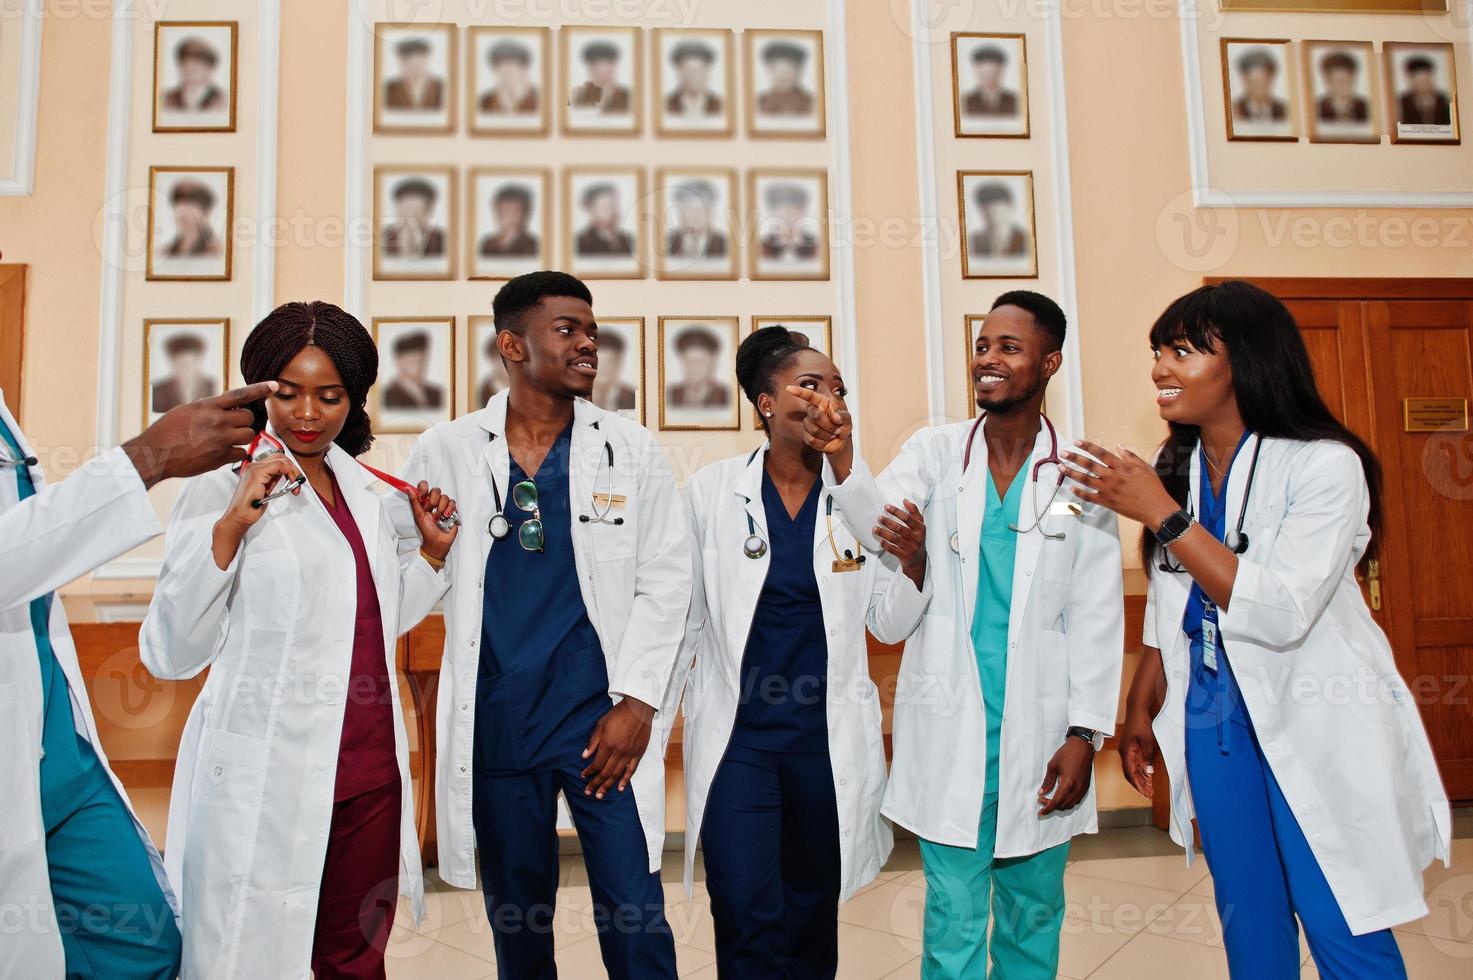 grupp afrikanska läkarstudenter på college. foto